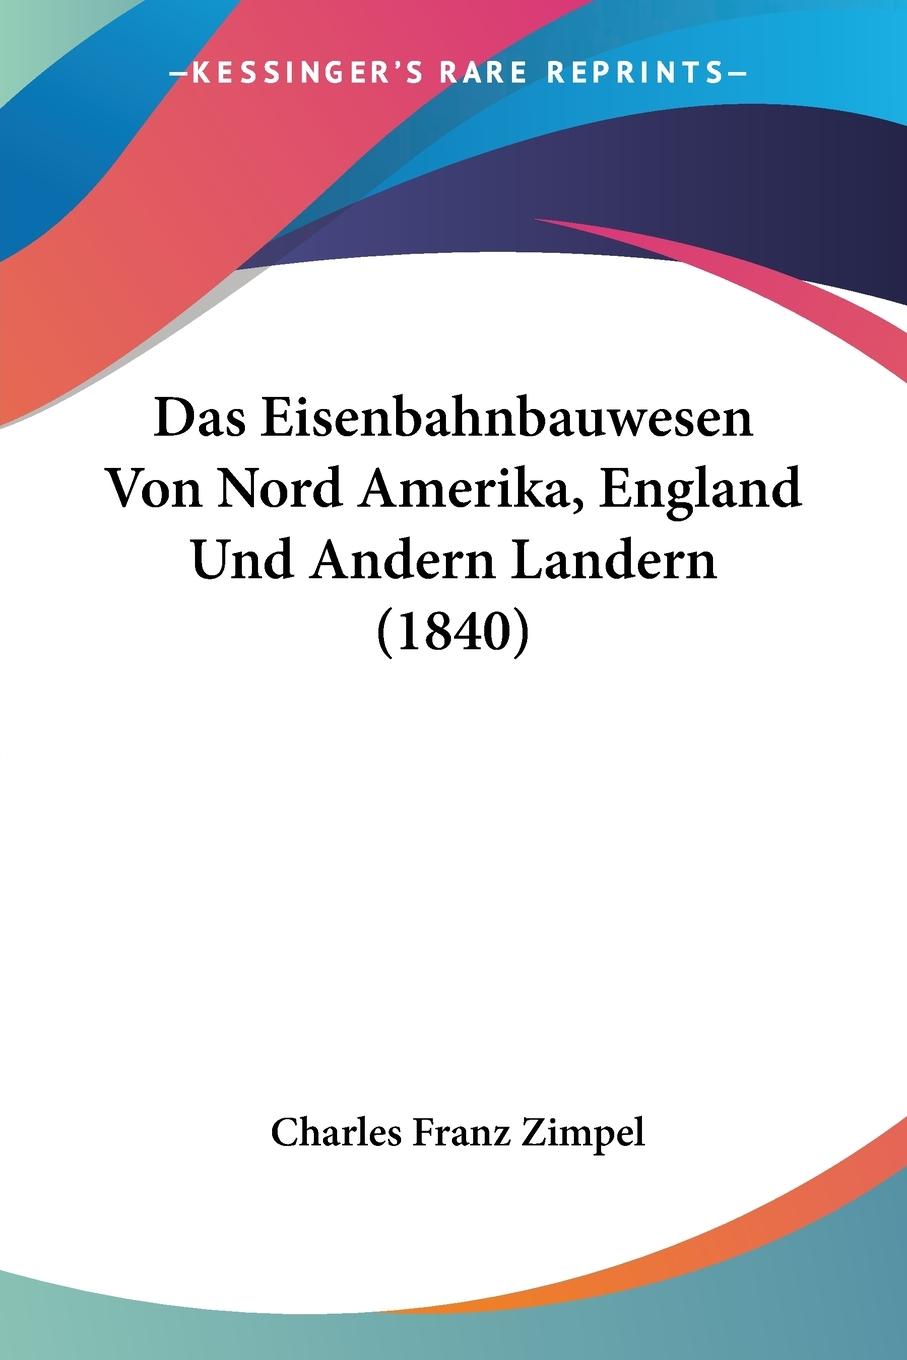 Das Eisenbahnbauwesen Von Nord Amerika, England Und Andern Landern (1840) - Zimpel, Charles Franz